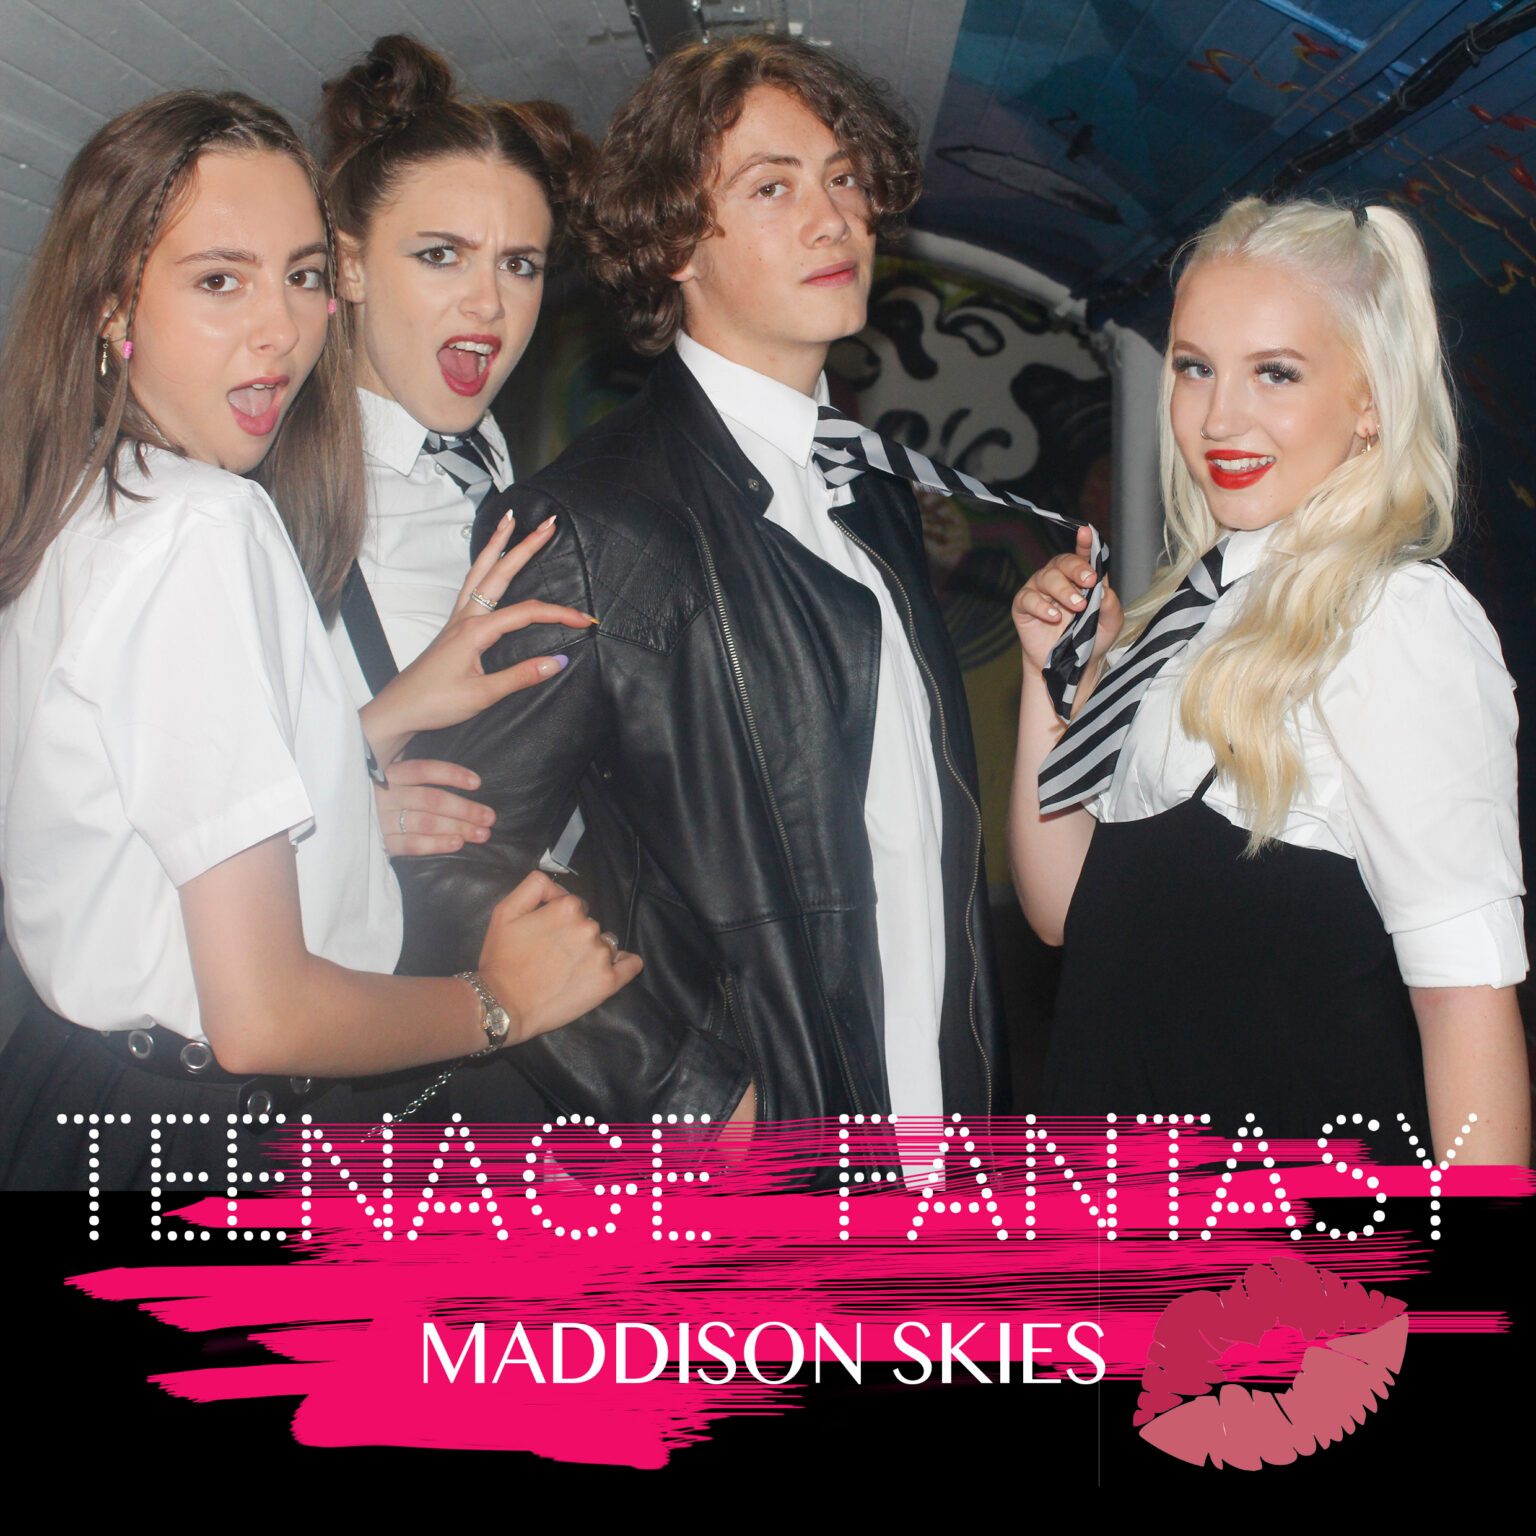 Maddison skies - Teenage Fantasy